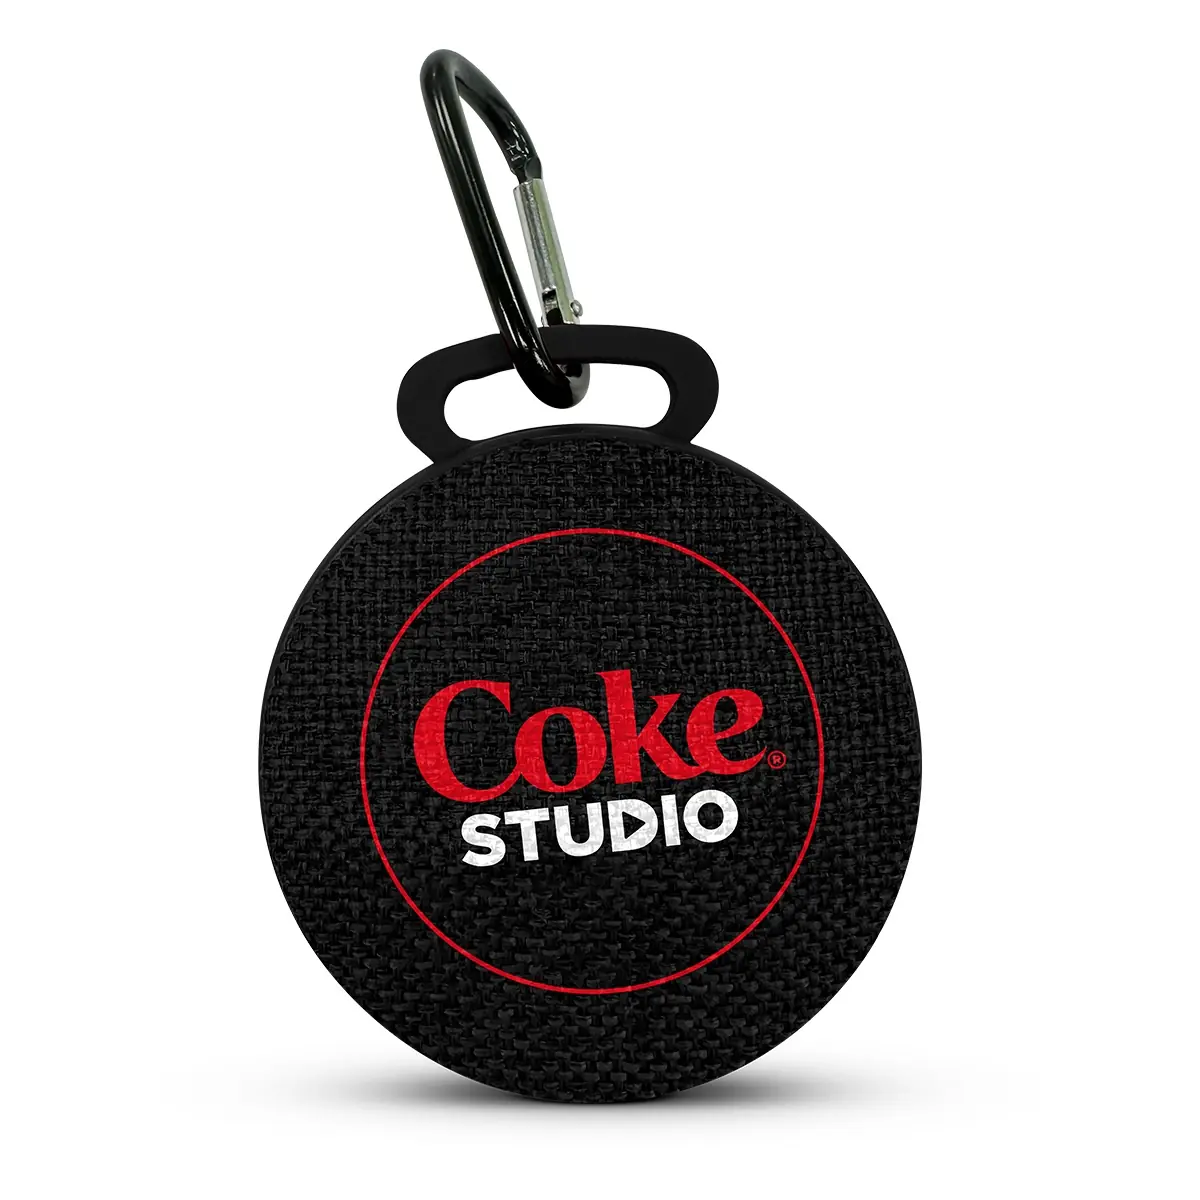 Instantly Win a Coke&nbsp;Studio&#8482; Waterproof Bluetooth Speaker